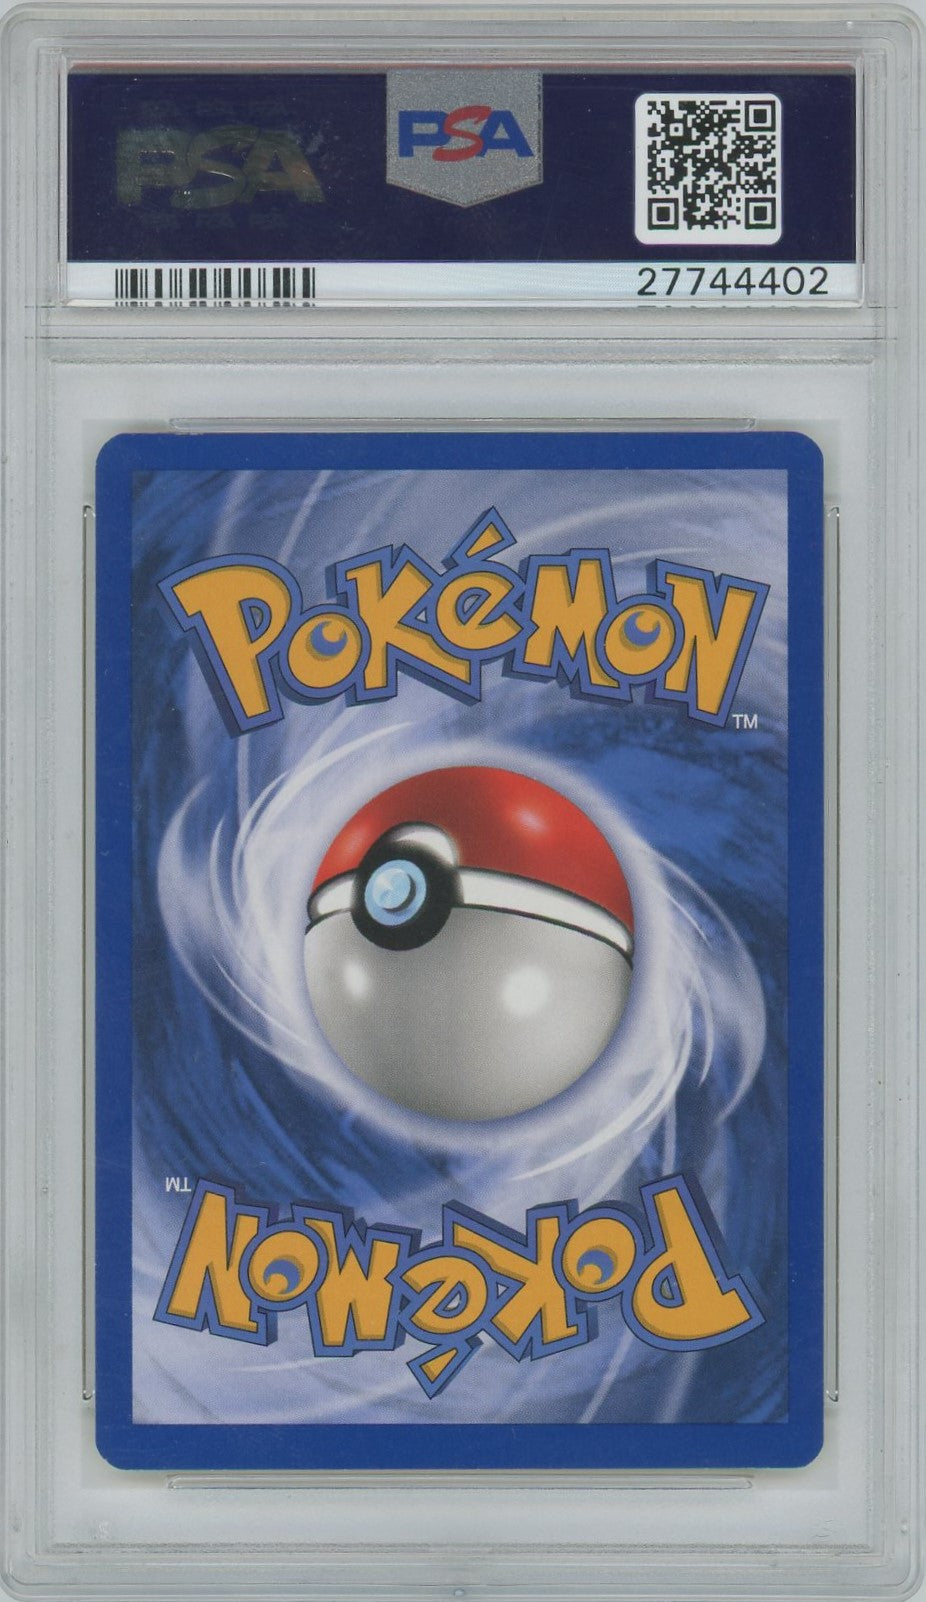 PSA Gem Mint 10 - 2001 Pokémon - Neo Discovery - Hoppip - 1st Edition